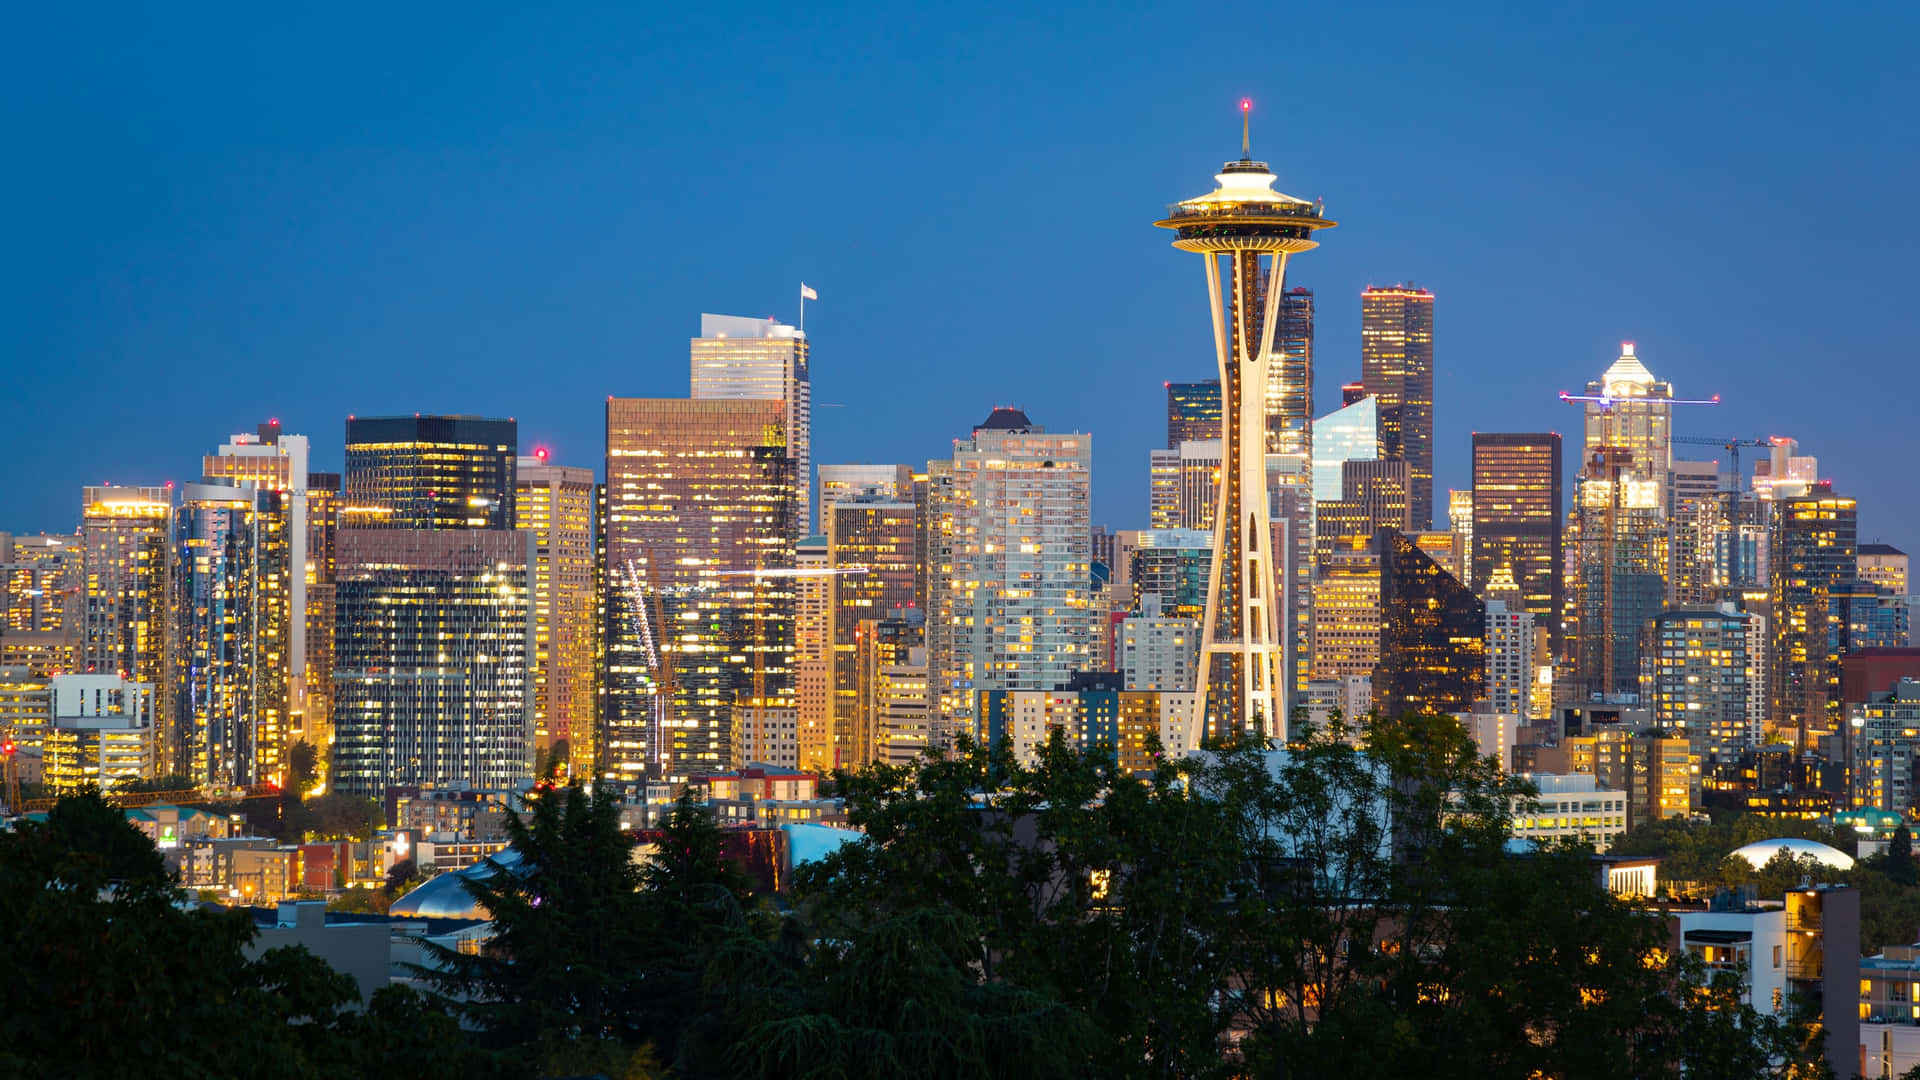 Vistanoturna Do Kerry Park - O Melhor Fundo De Seattle